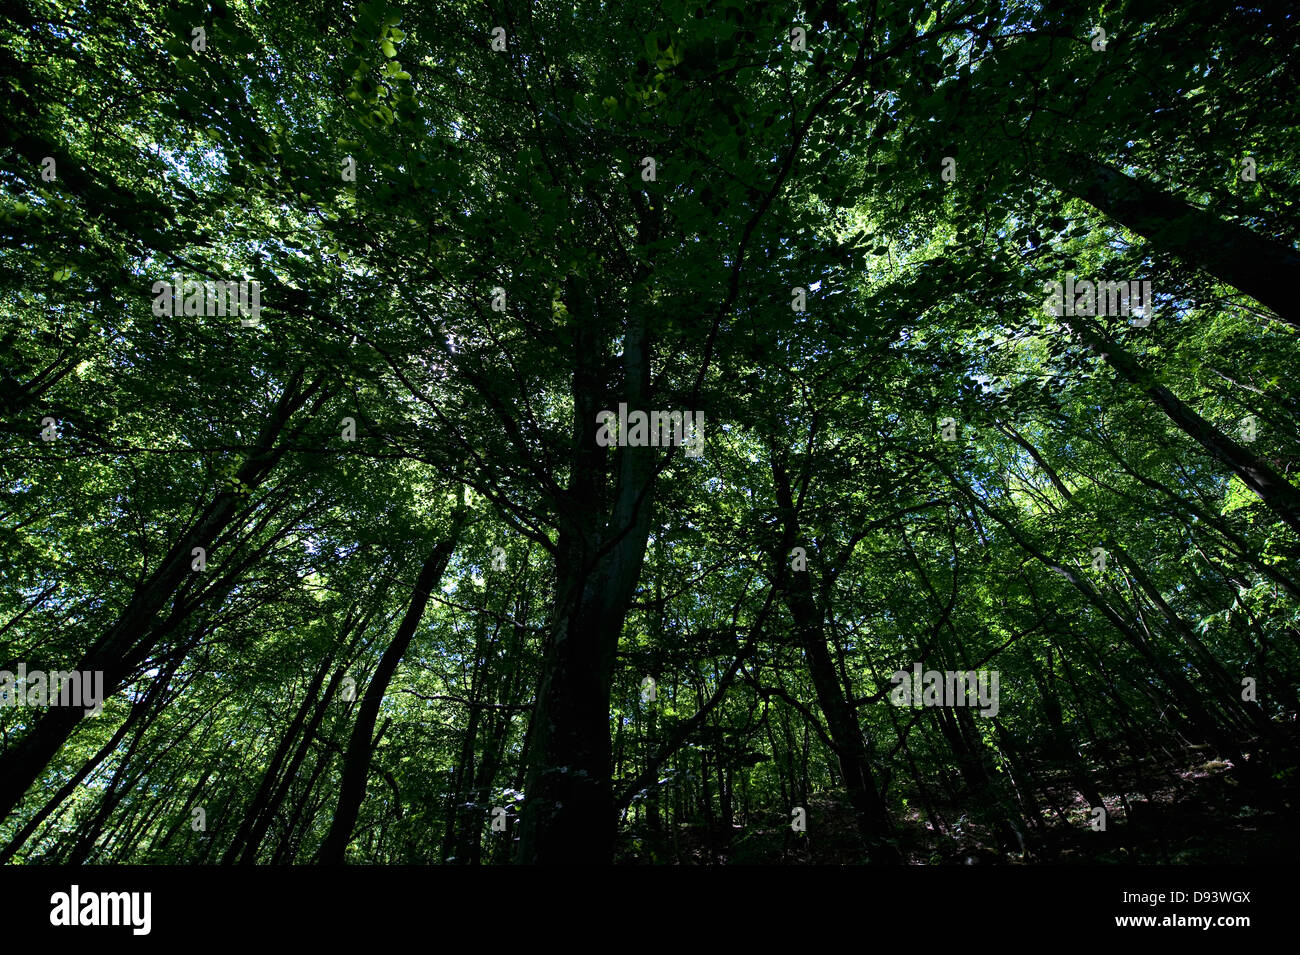 Les hêtres en forêt, low angle view Banque D'Images